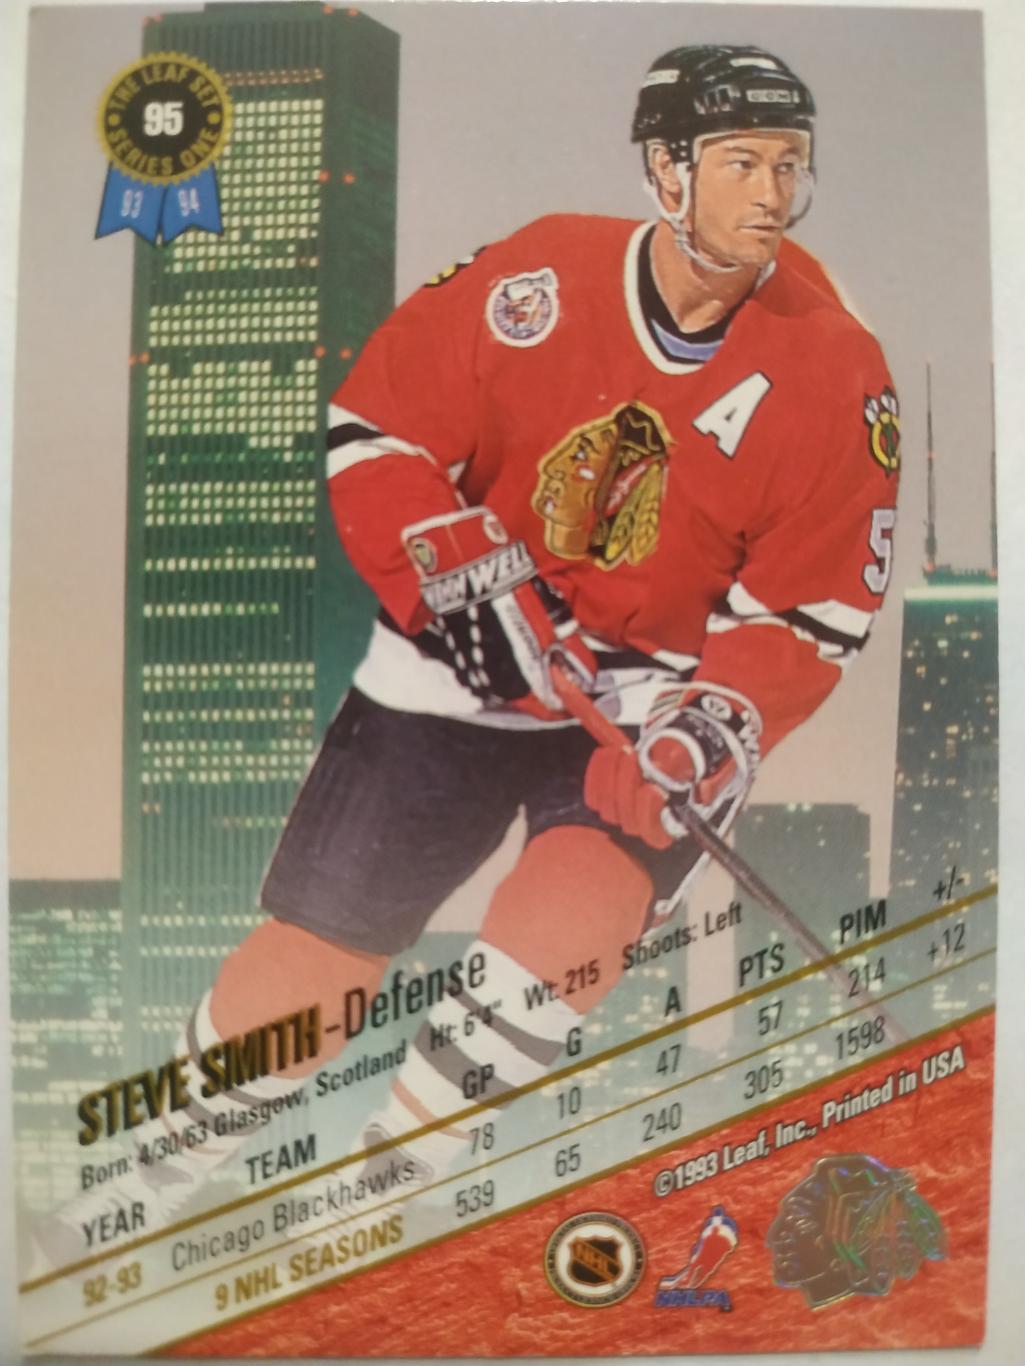 ХОККЕЙ КАРТОЧКА НХЛ LEAF SET SERIES ONE 1993-94 STEVE SMITH BLACKHAWKS #95 1